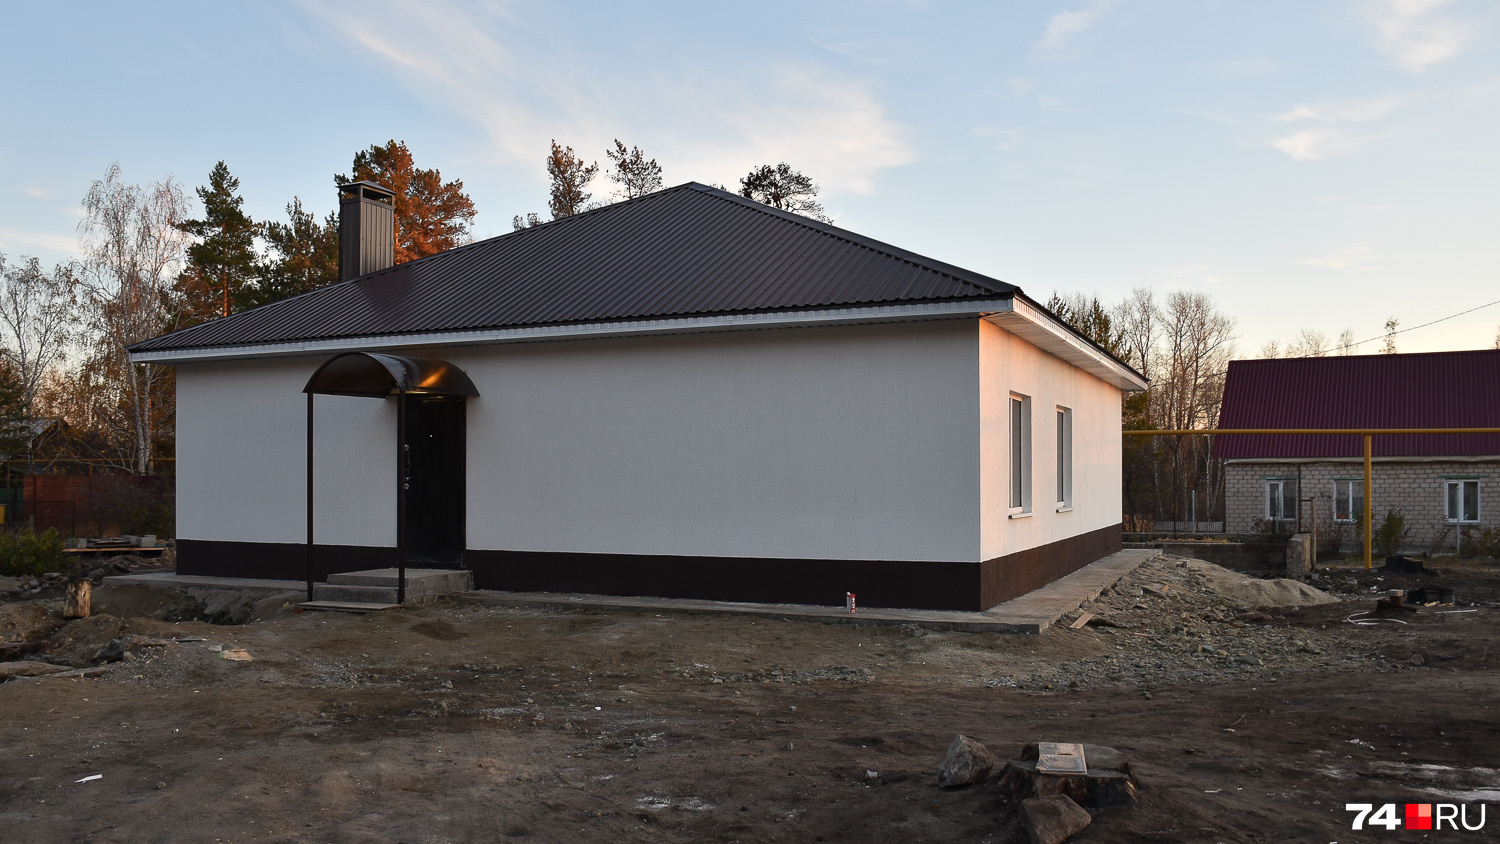 Новый дом Тамары Николаевой меньше прежнего, но выглядит добротно